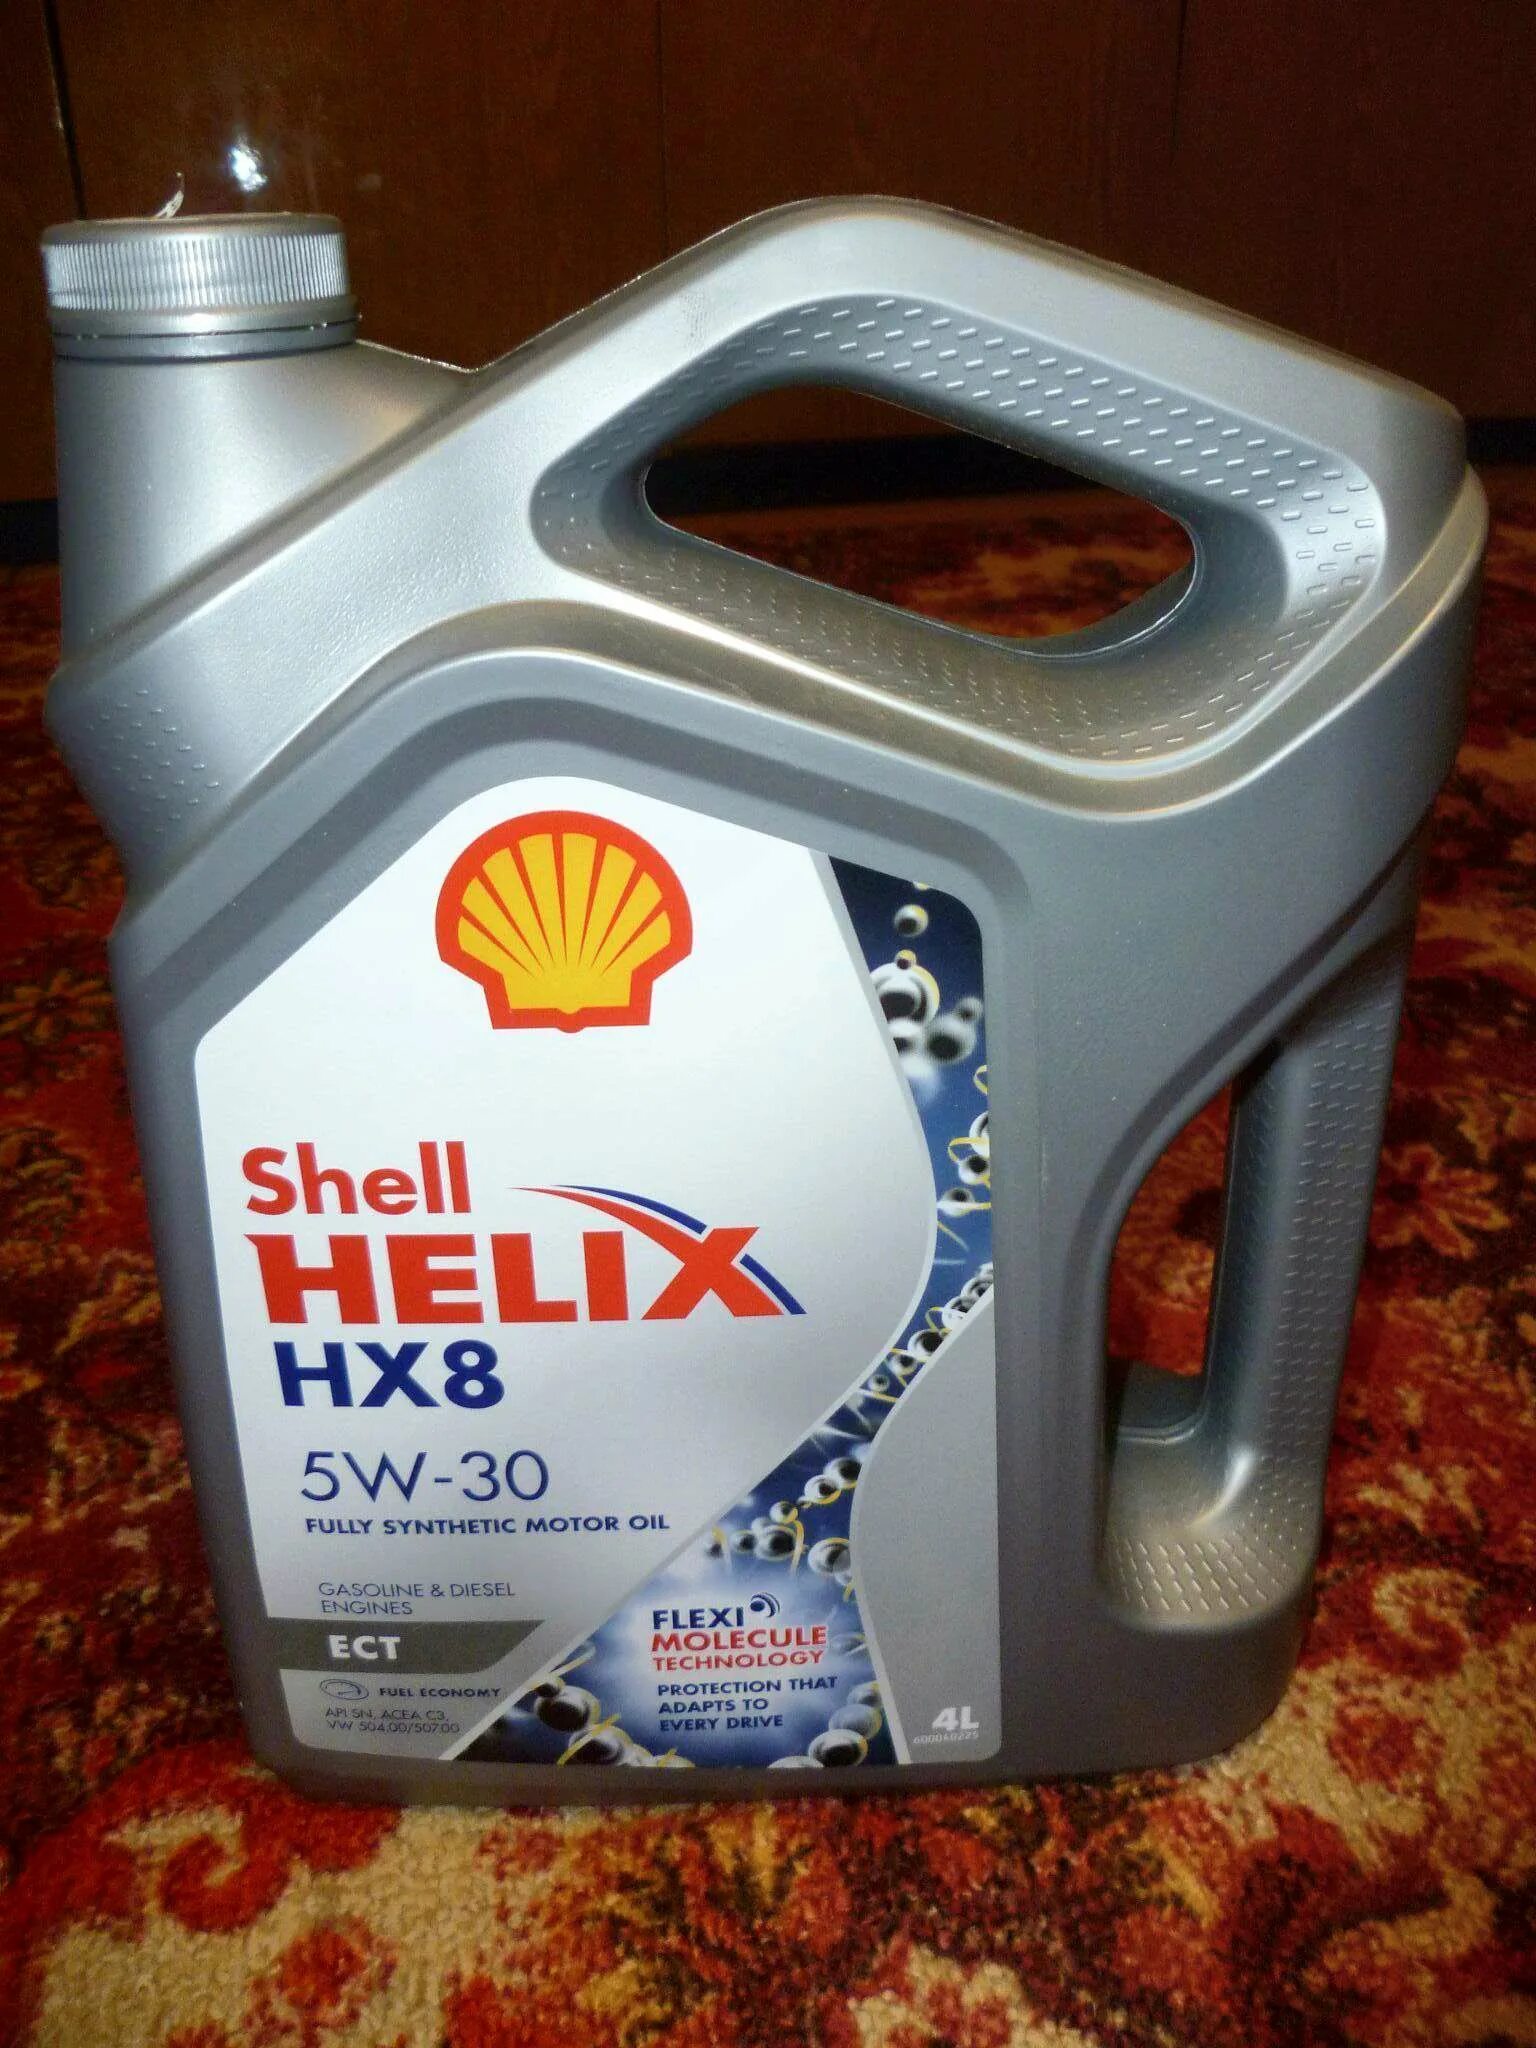 Shell моторное 5w30 hx8. Shell hx8 5w30 ect. Hx8 ect 5w30. Helix hx8 ect 5w-30. Shell Helix hx8 ect 5w-30.